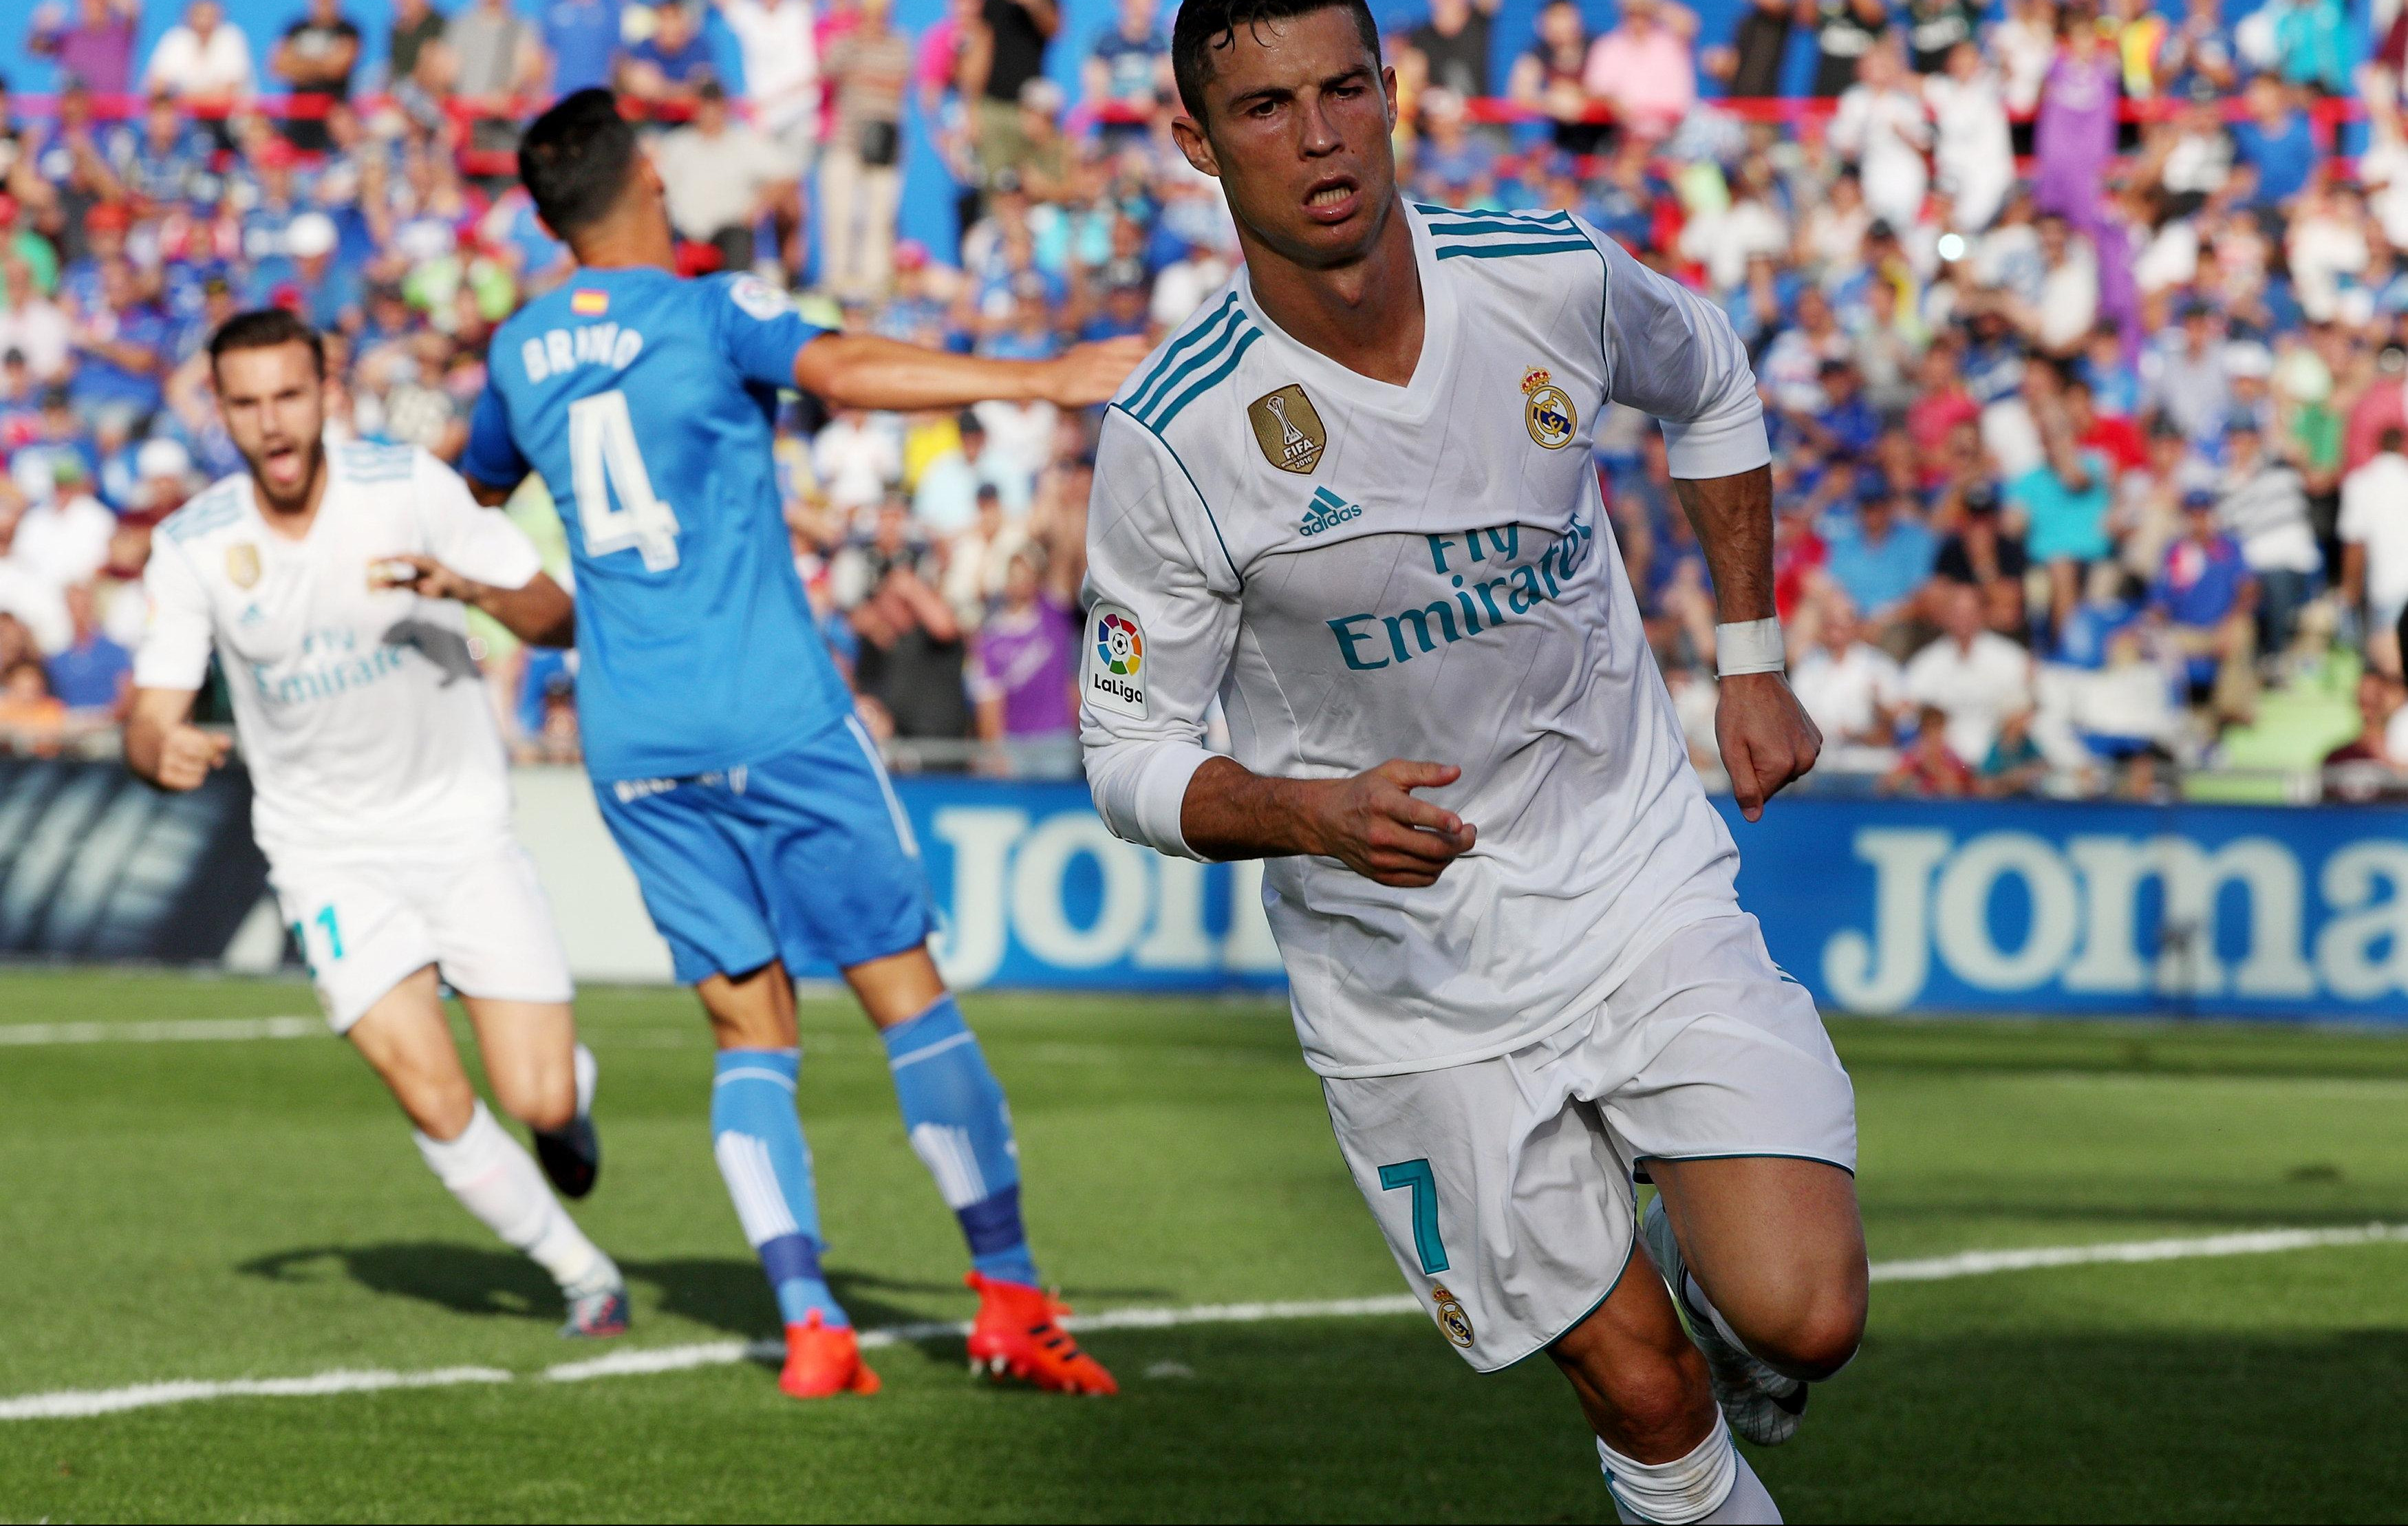 (VIDEO) PRIMERA: Ronaldo se prvo propisno obrukao, pa doneo pobedu Realu!